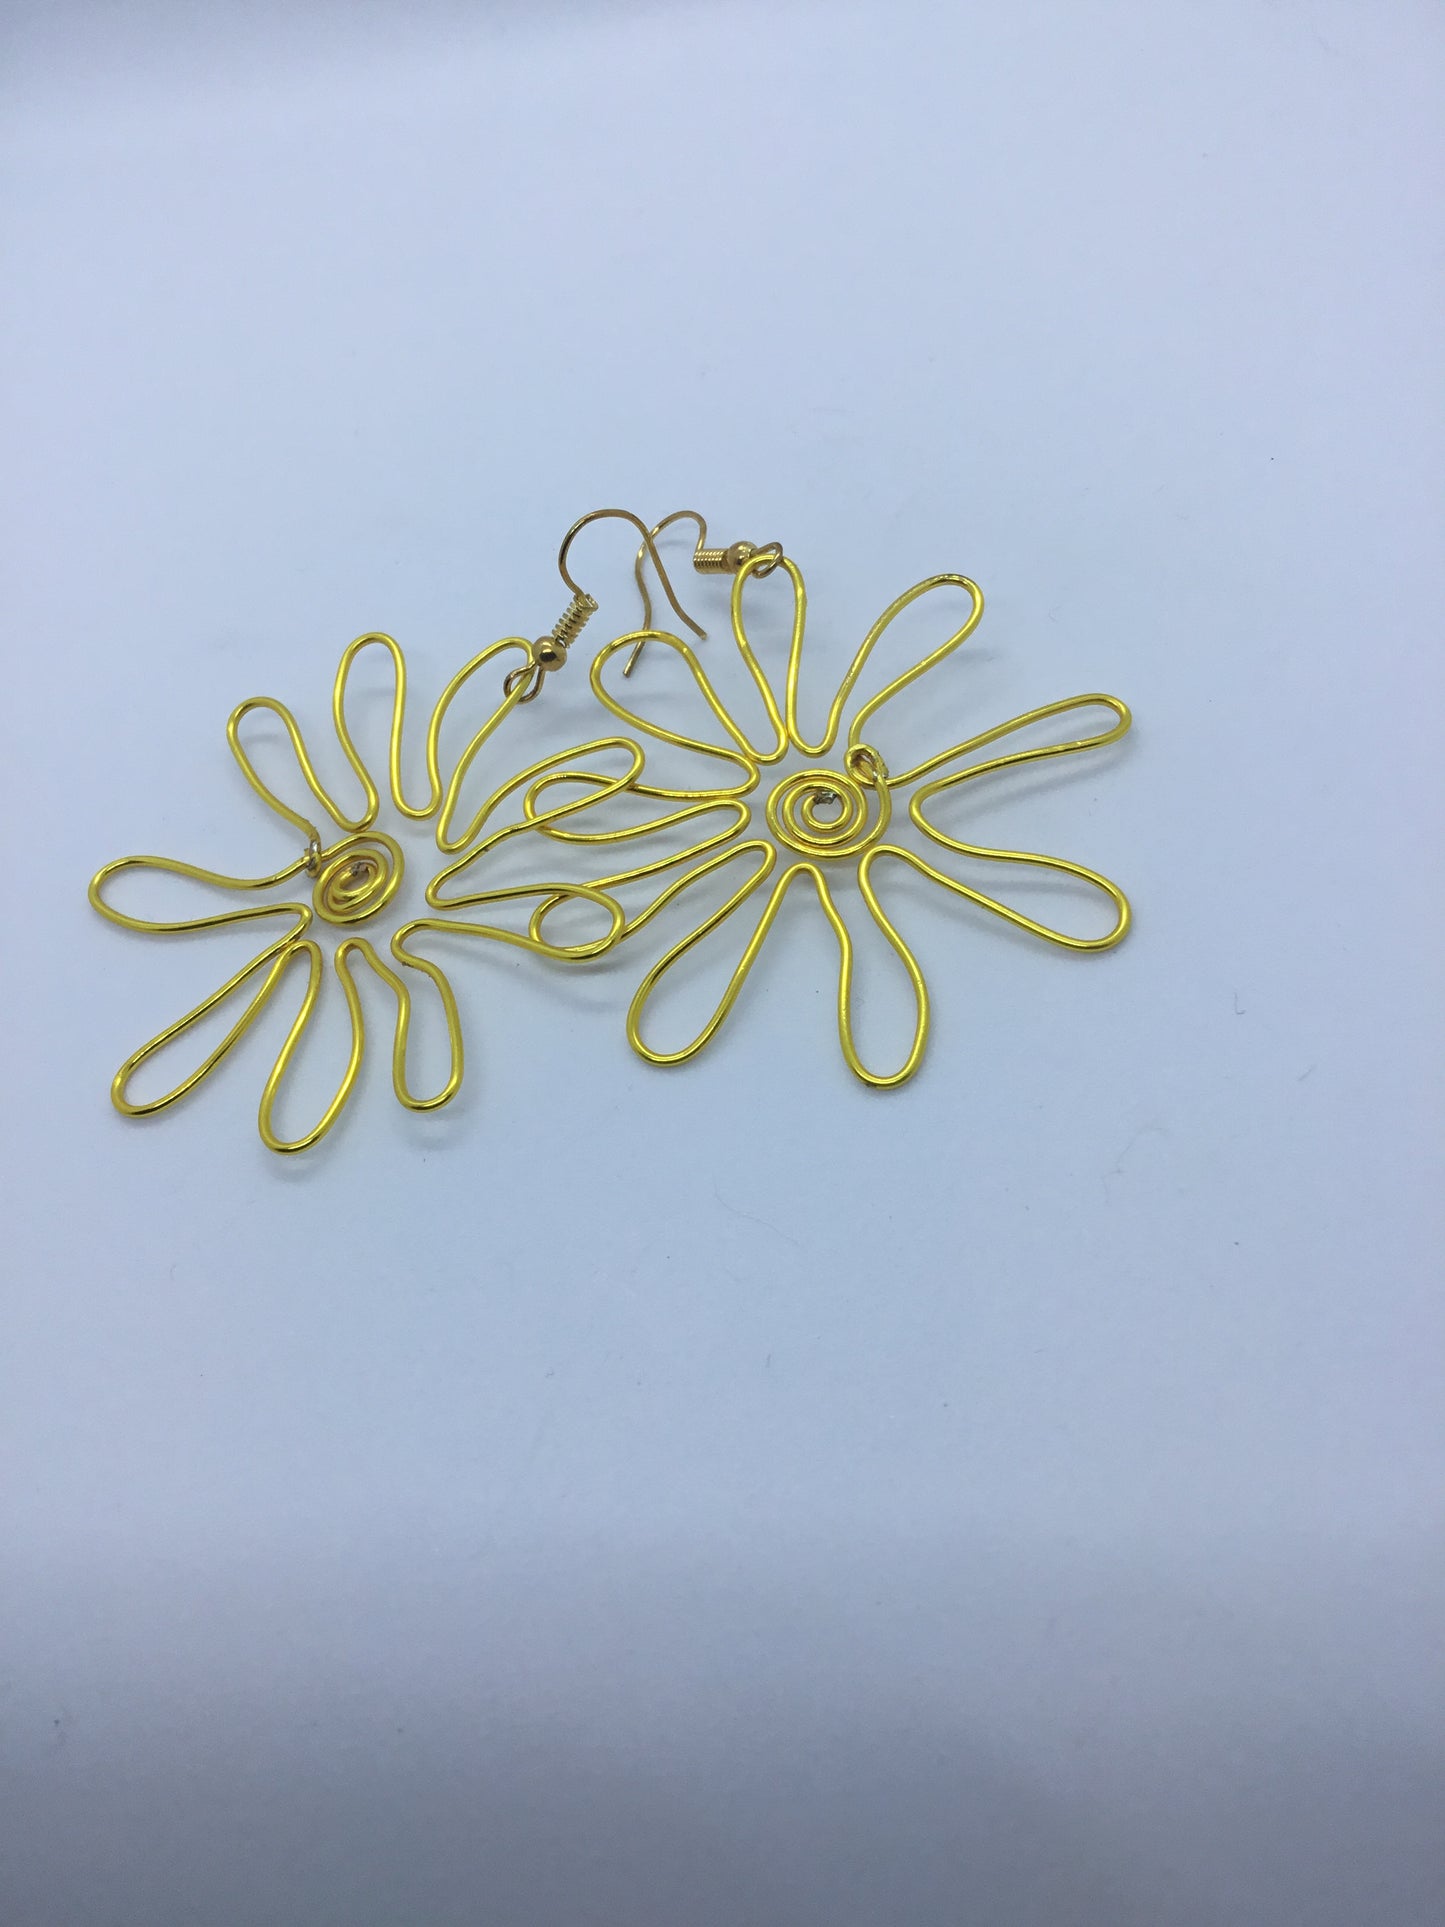 Wire flower earrings in gold wire